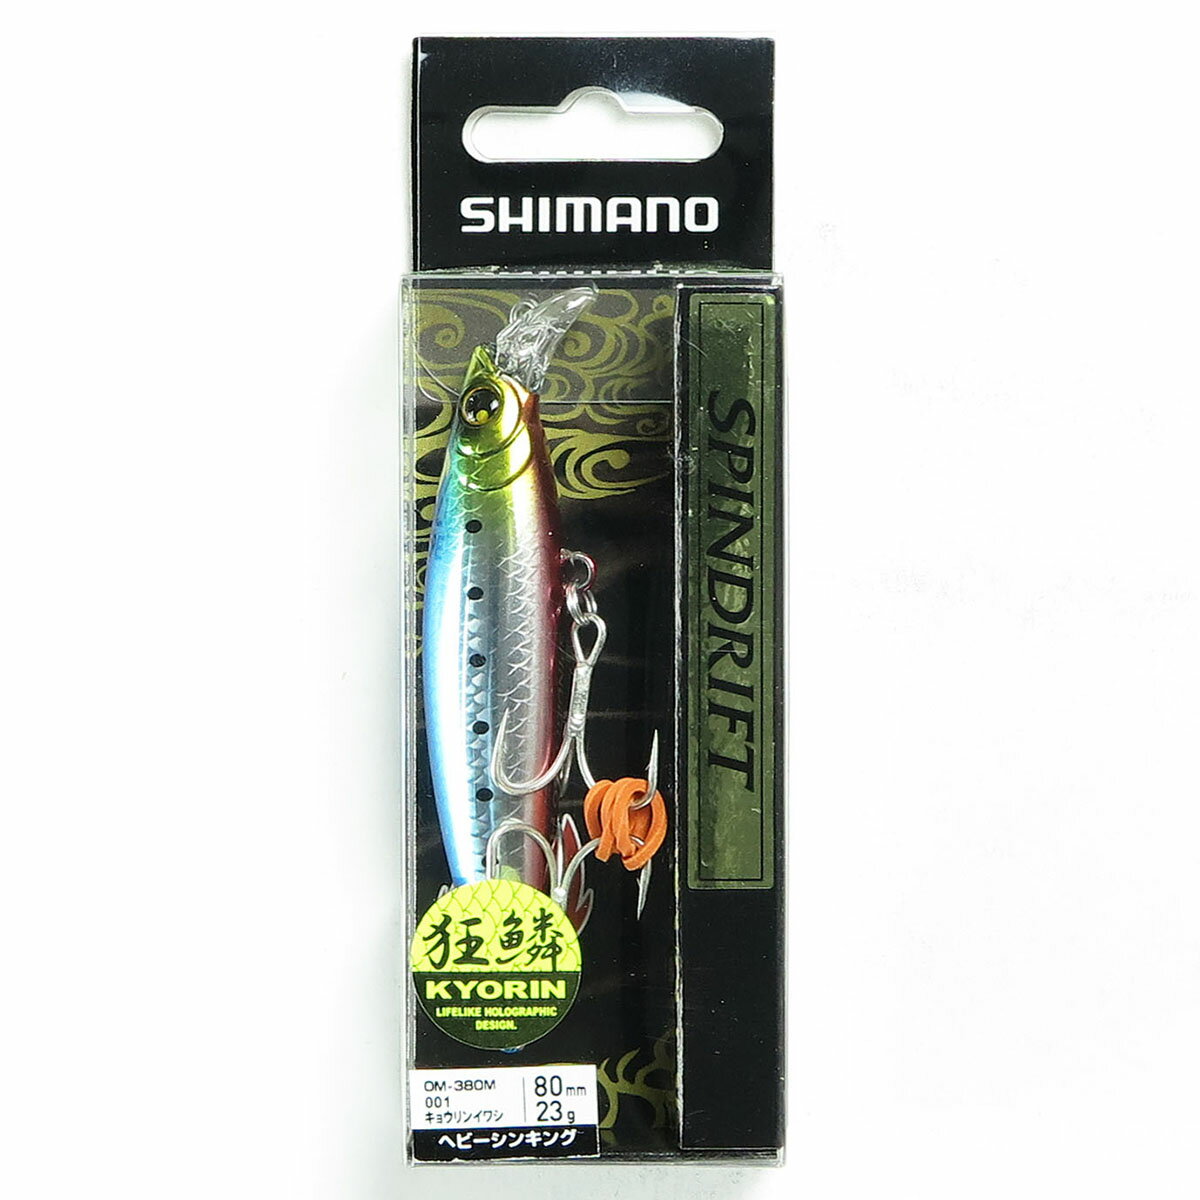 「 シマノ SHIMANO 熱砂 スピンドリフト AR-C 80HS 001 キョウリンイワシ OM-380M 」  釣具 釣り具 釣り用品